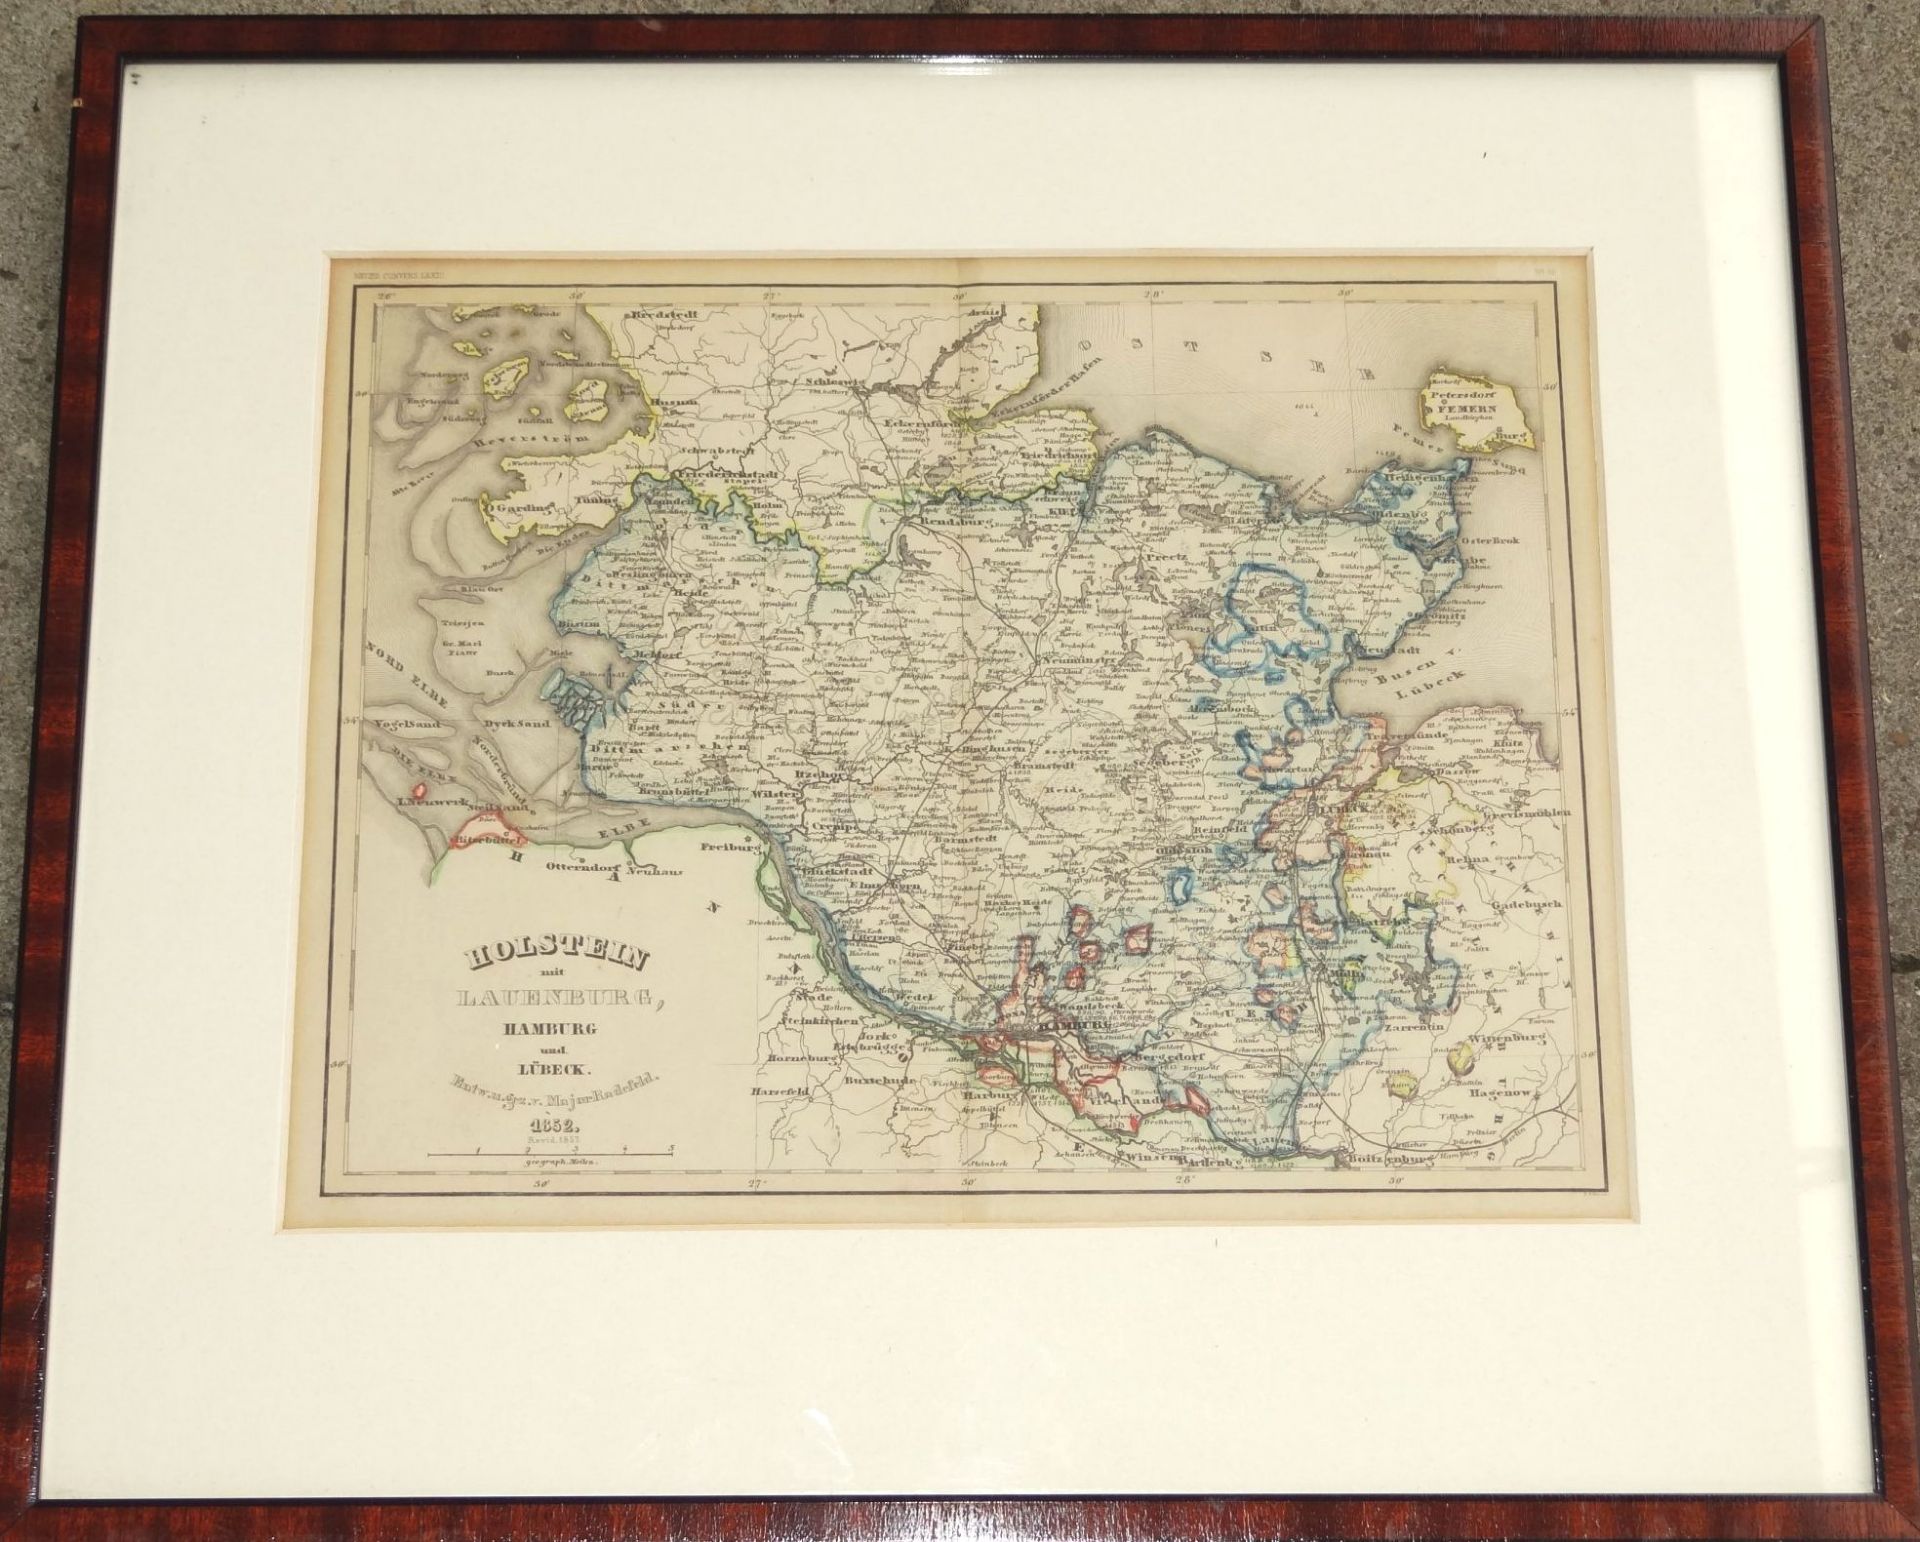 kl. Landkarte um 1860 "Schleswig und Lauenburg" grenzcoloriert, ger/Glas, RG 32x37 cm - Bild 2 aus 4